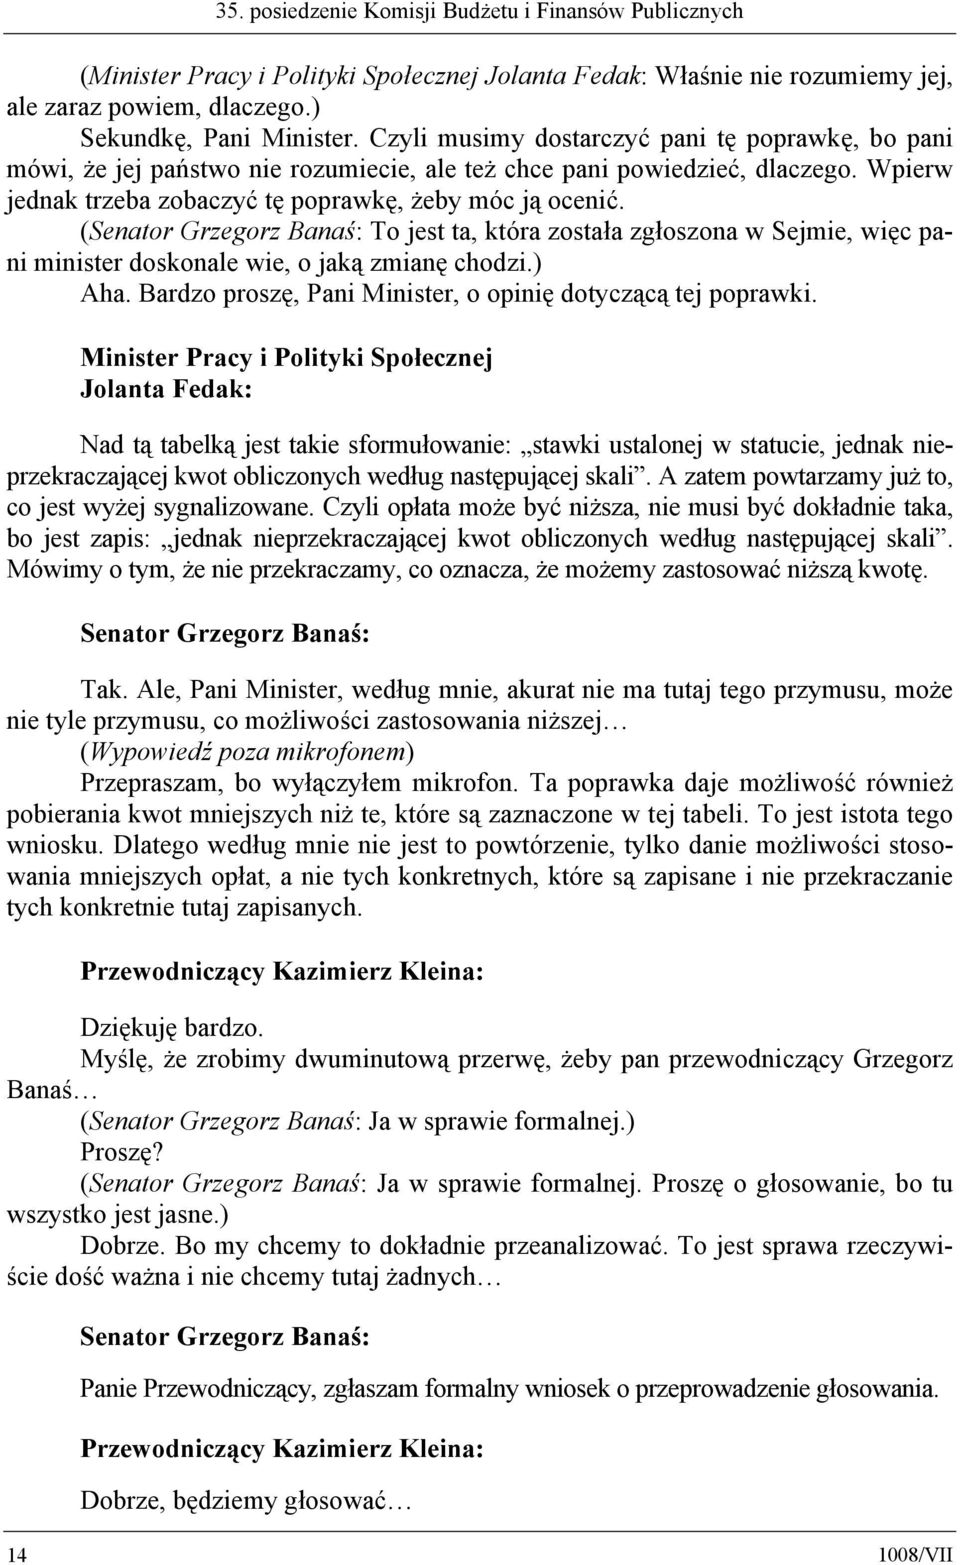 (Senator Grzegorz Banaś: To jest ta, która została zgłoszona w Sejmie, więc pani minister doskonale wie, o jaką zmianę chodzi.) Aha. Bardzo proszę, Pani Minister, o opinię dotyczącą tej poprawki.